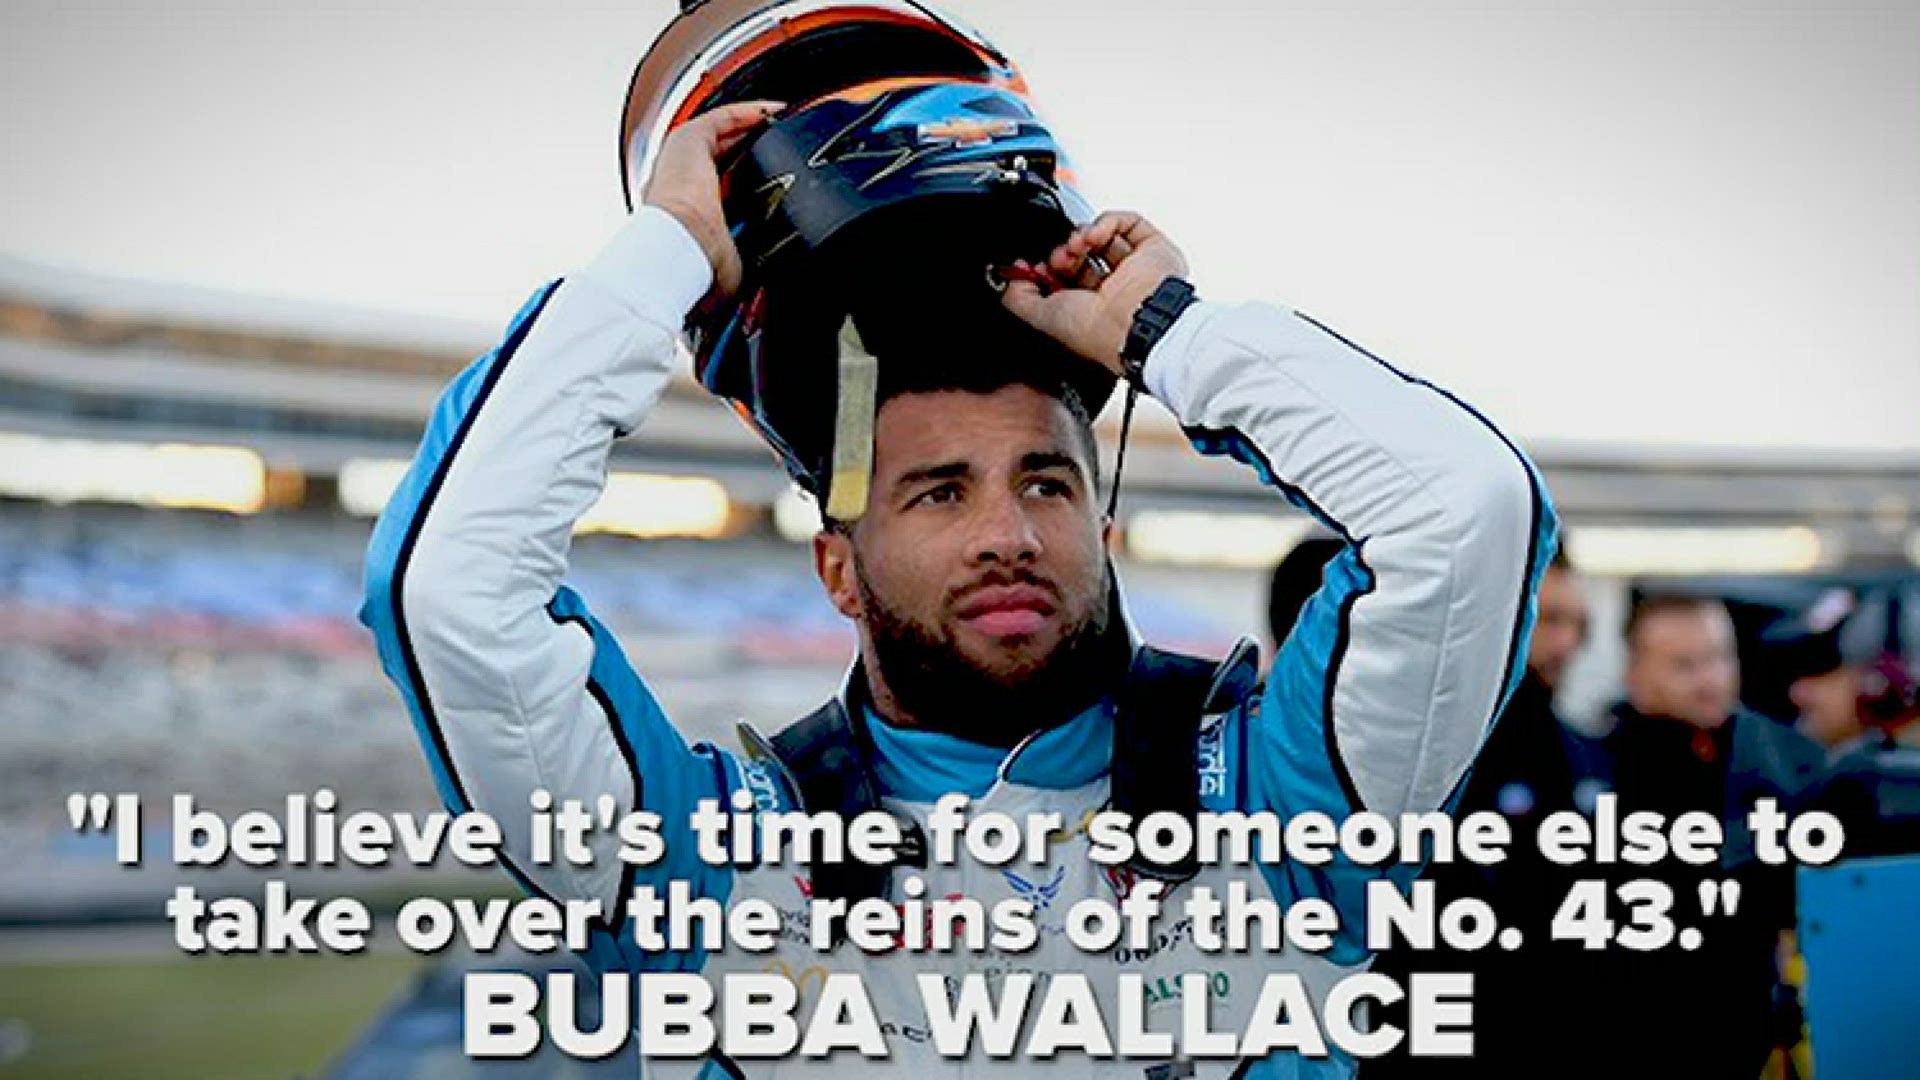 Bubba Wallace will stop racing Richard Petty Motorsports' No. 43 car at the end of the 2020 season.